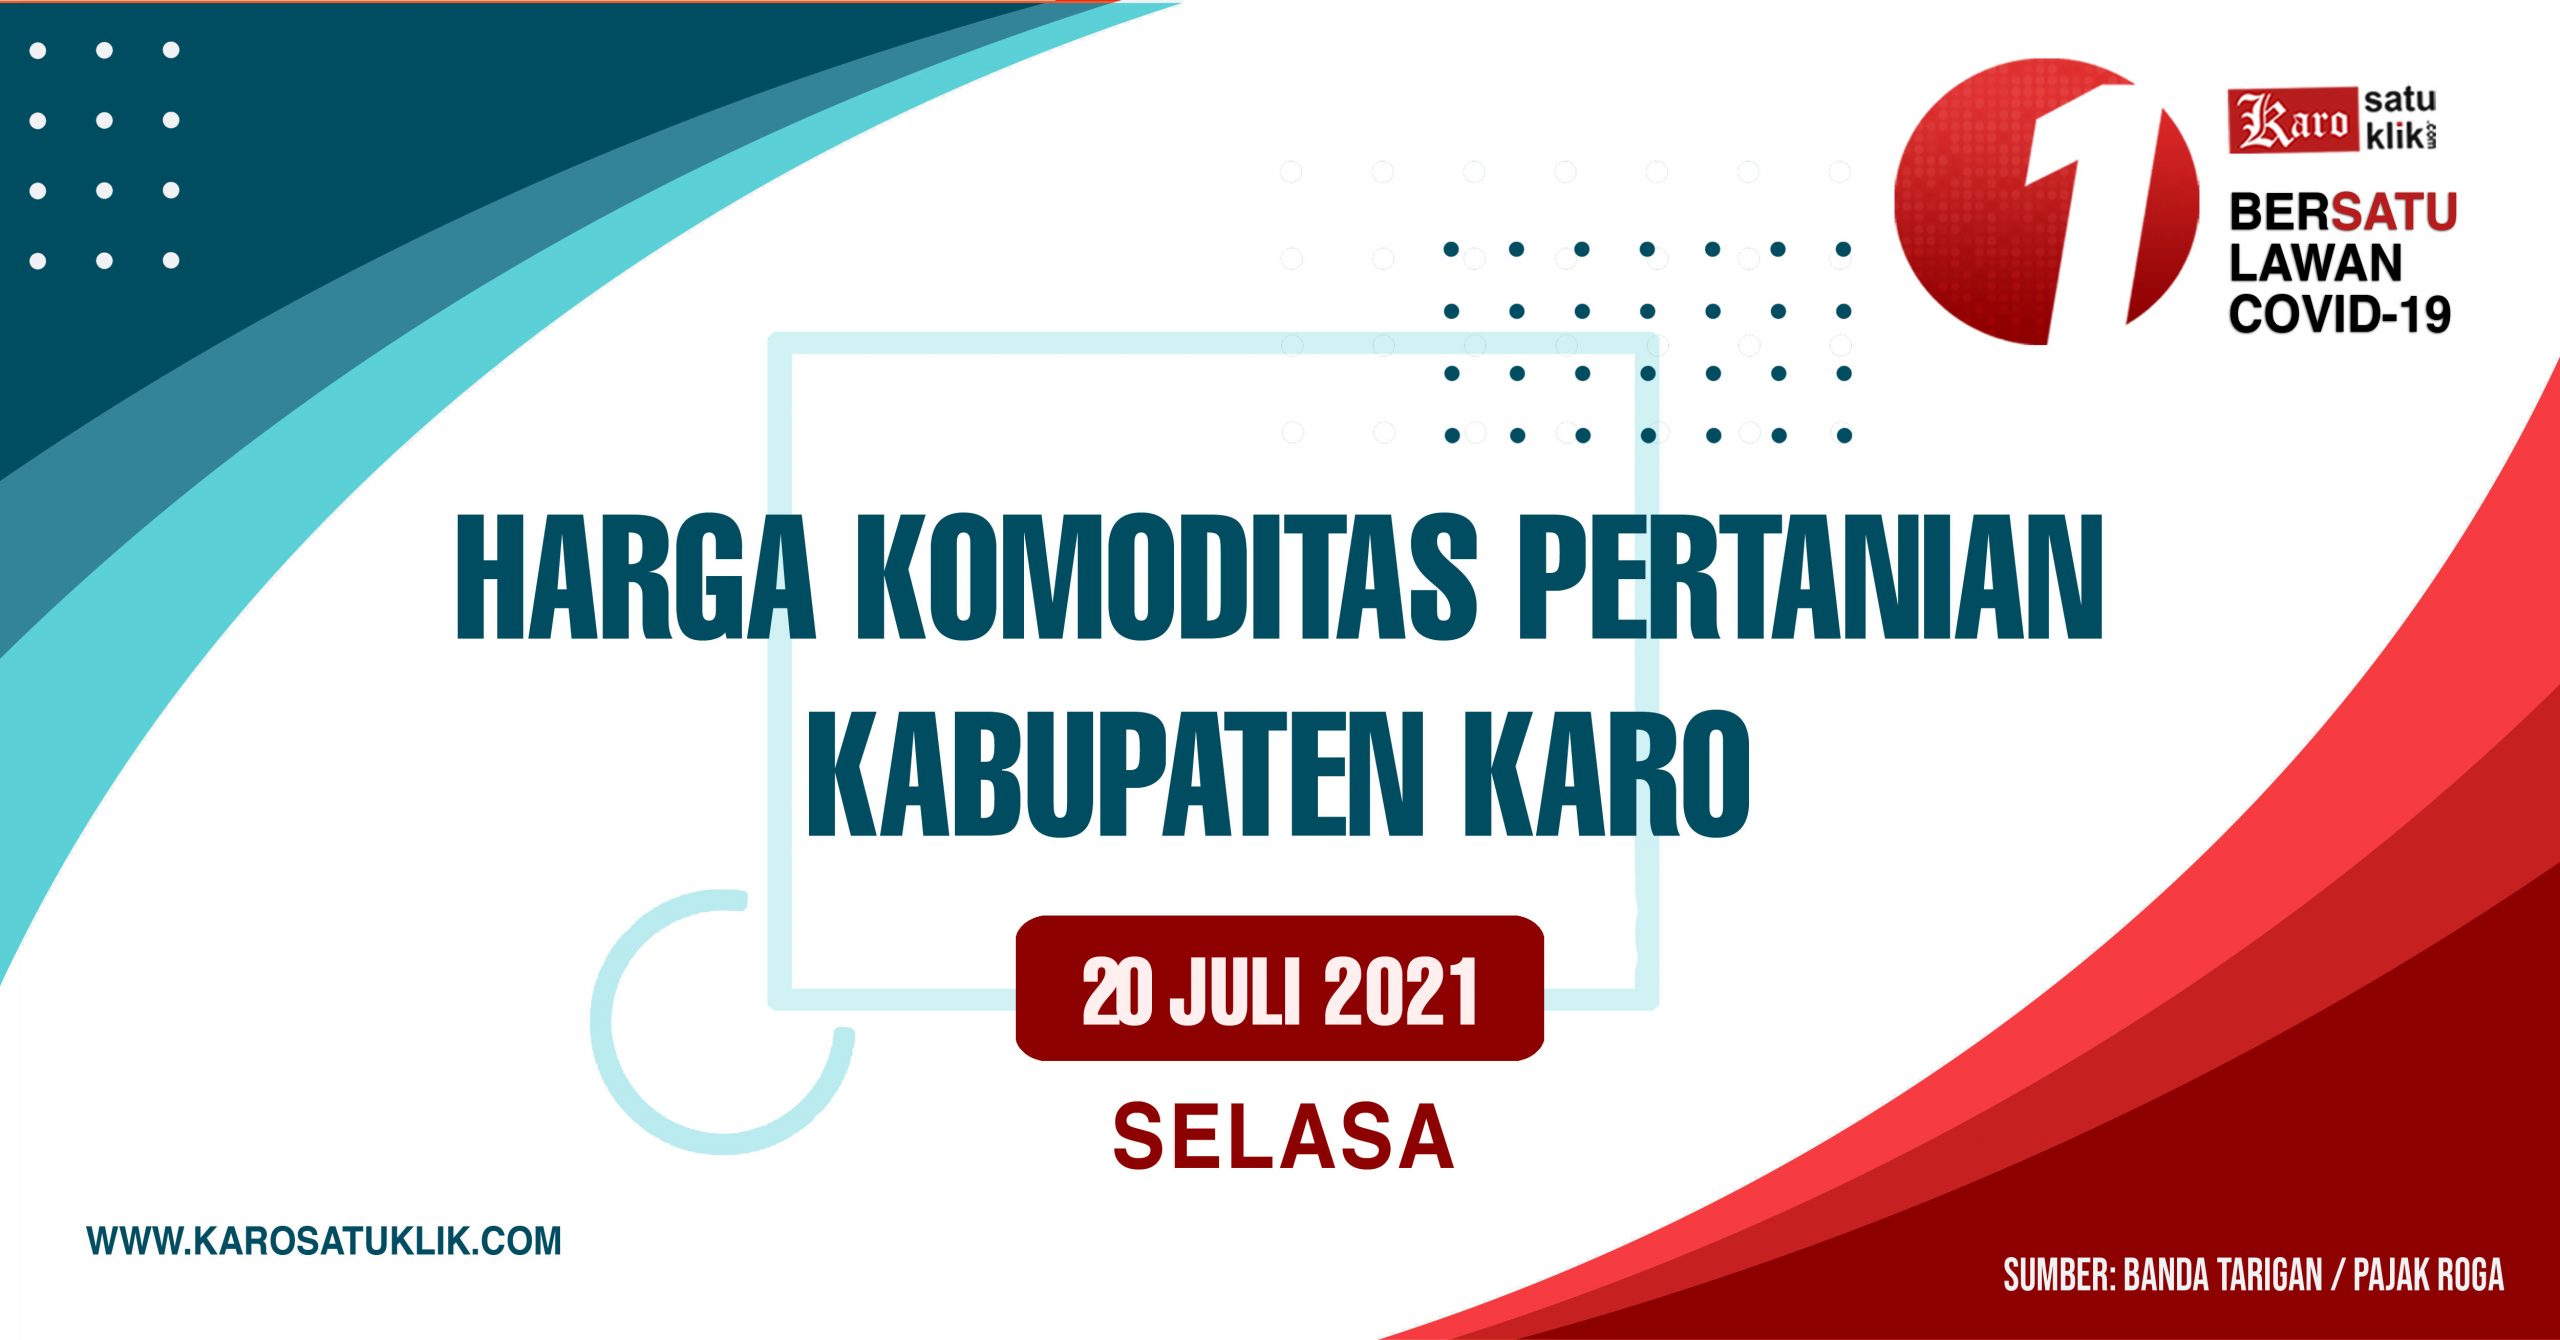 Harga Komoditas Pertanian Kabupaten Karo, Selasa 20 Juli 2021